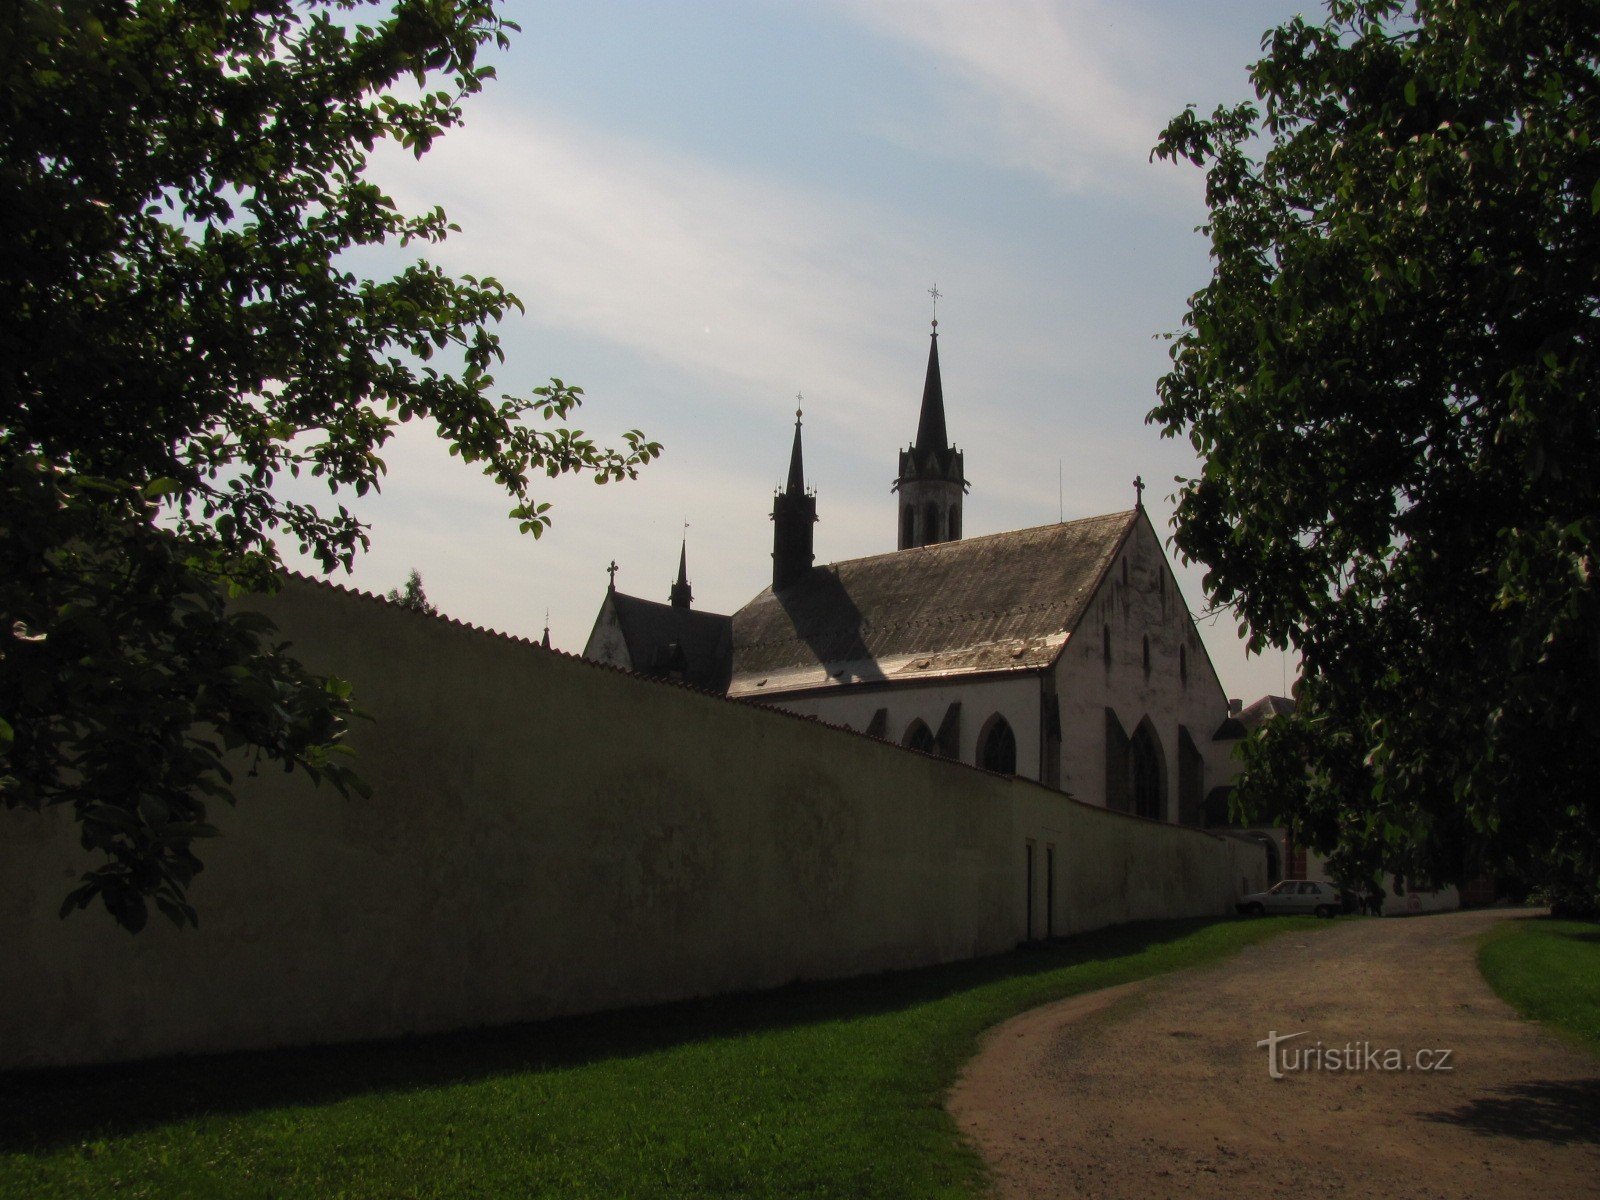 Cistercian monastery Vyšší Brod